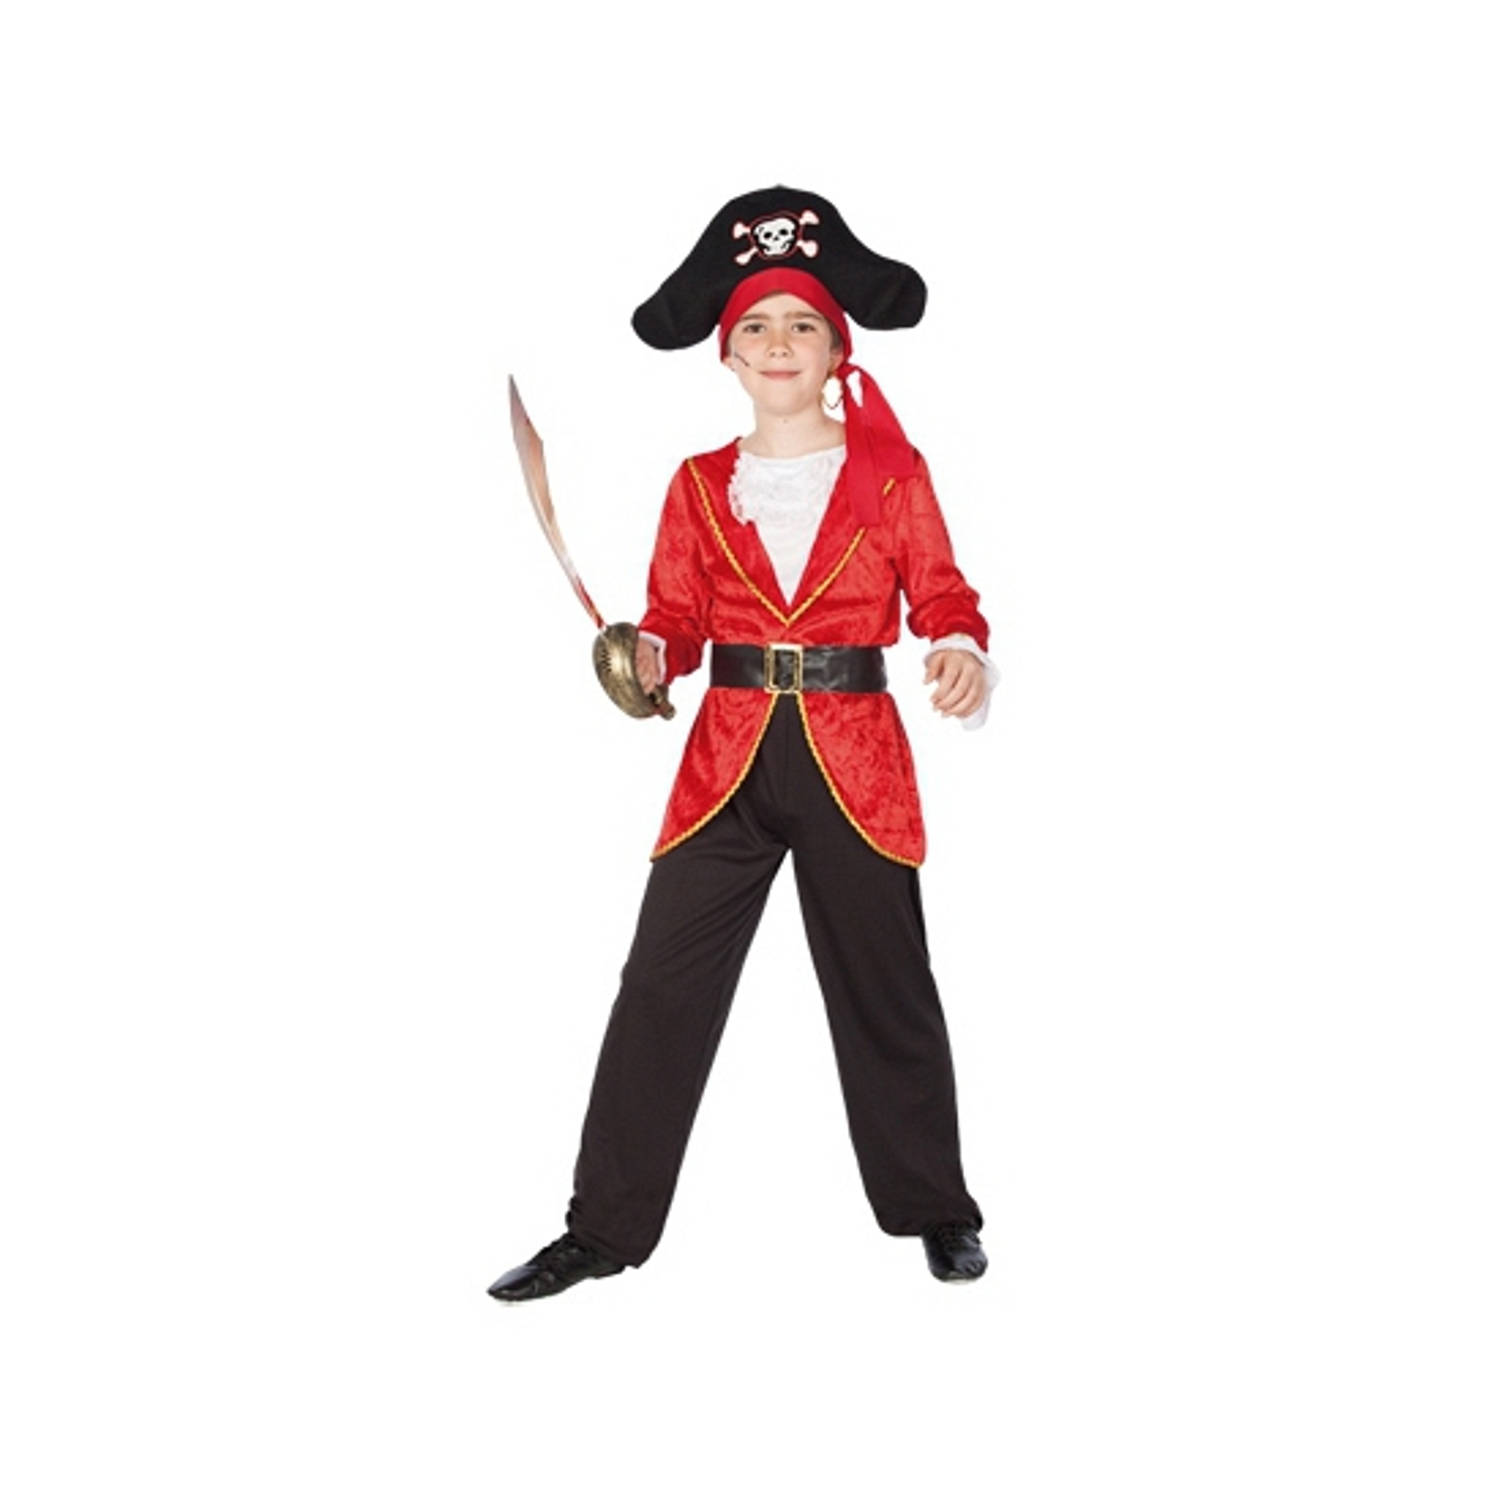 Voordelig piraten kostuum voor kinderen - T-03 (L)